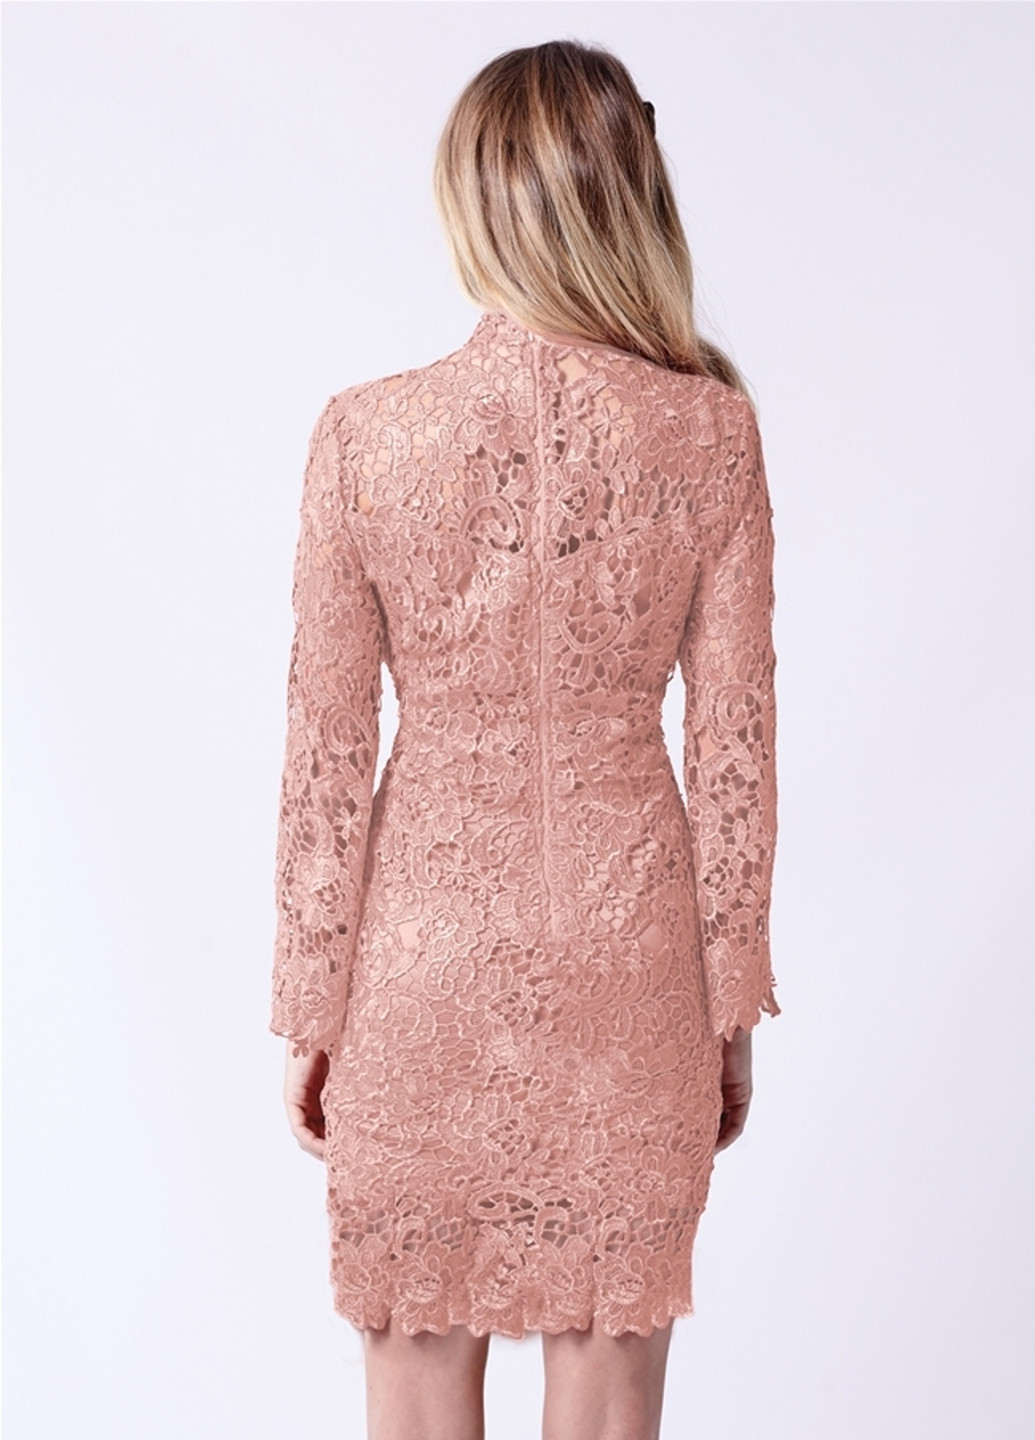 Светло-розовое коктейльное платье футляр Sistaglam однотонное